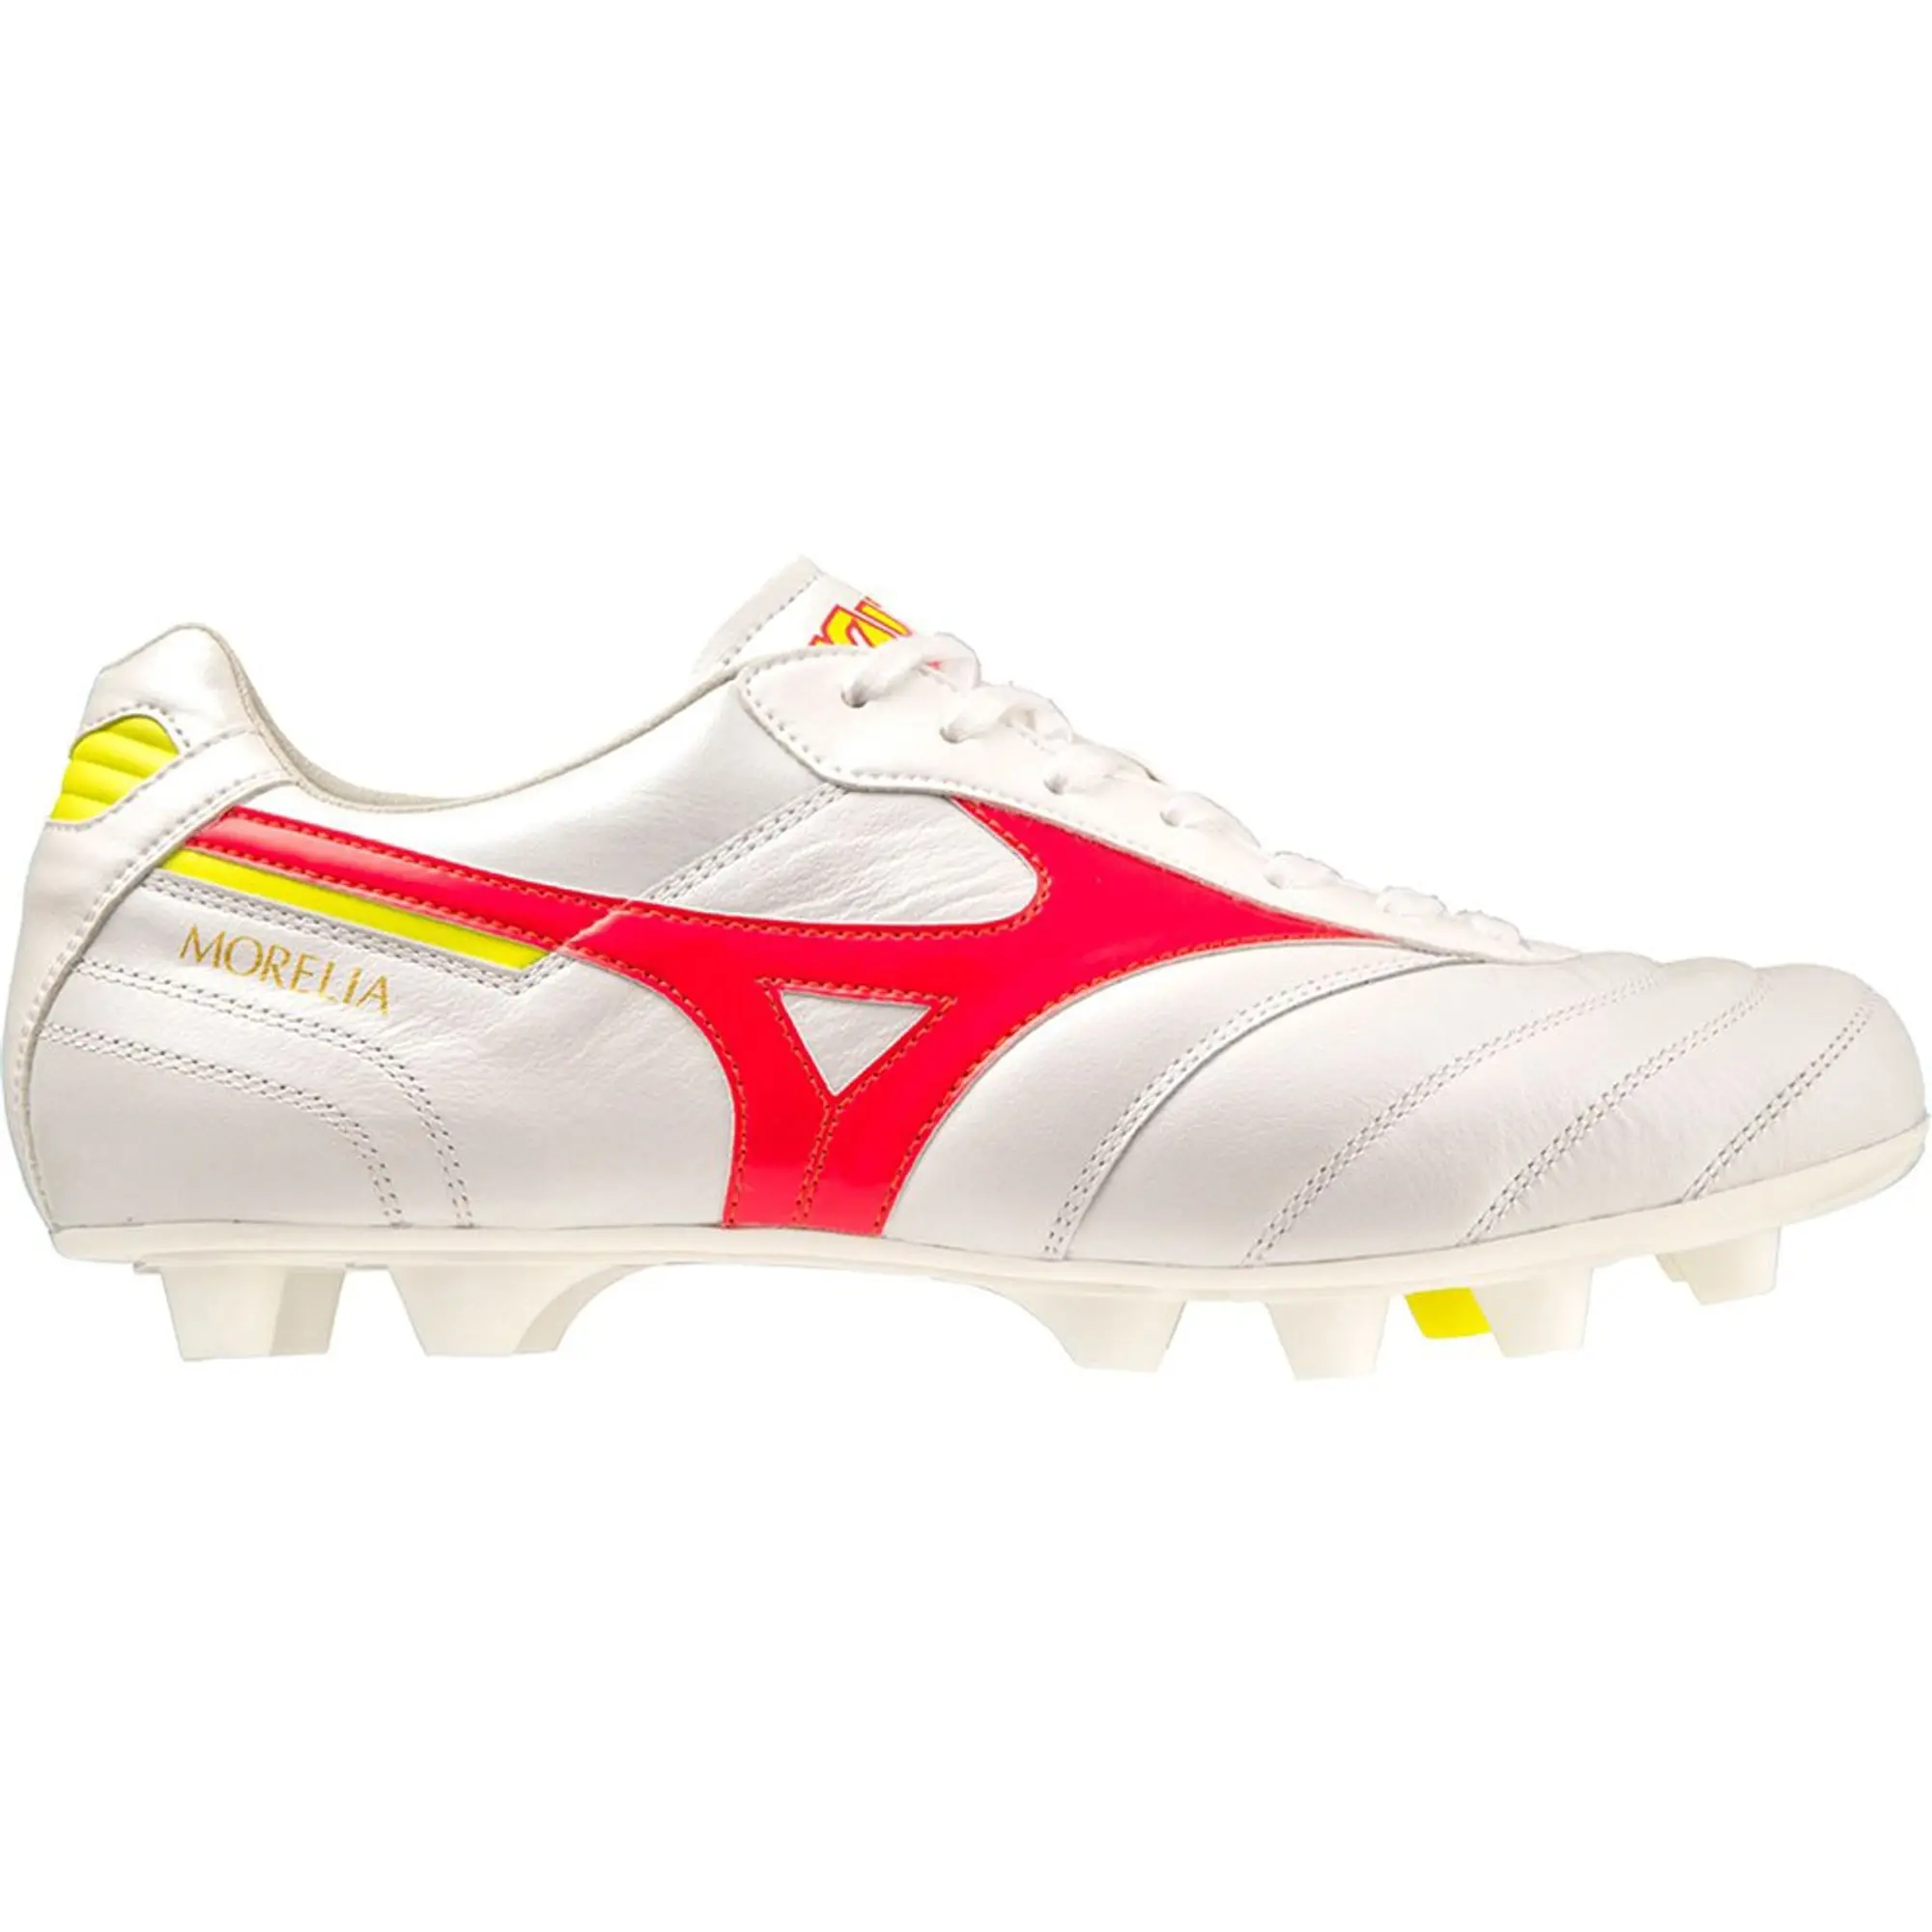 Mizuno Morelia Ii Elite Football Boots  - White